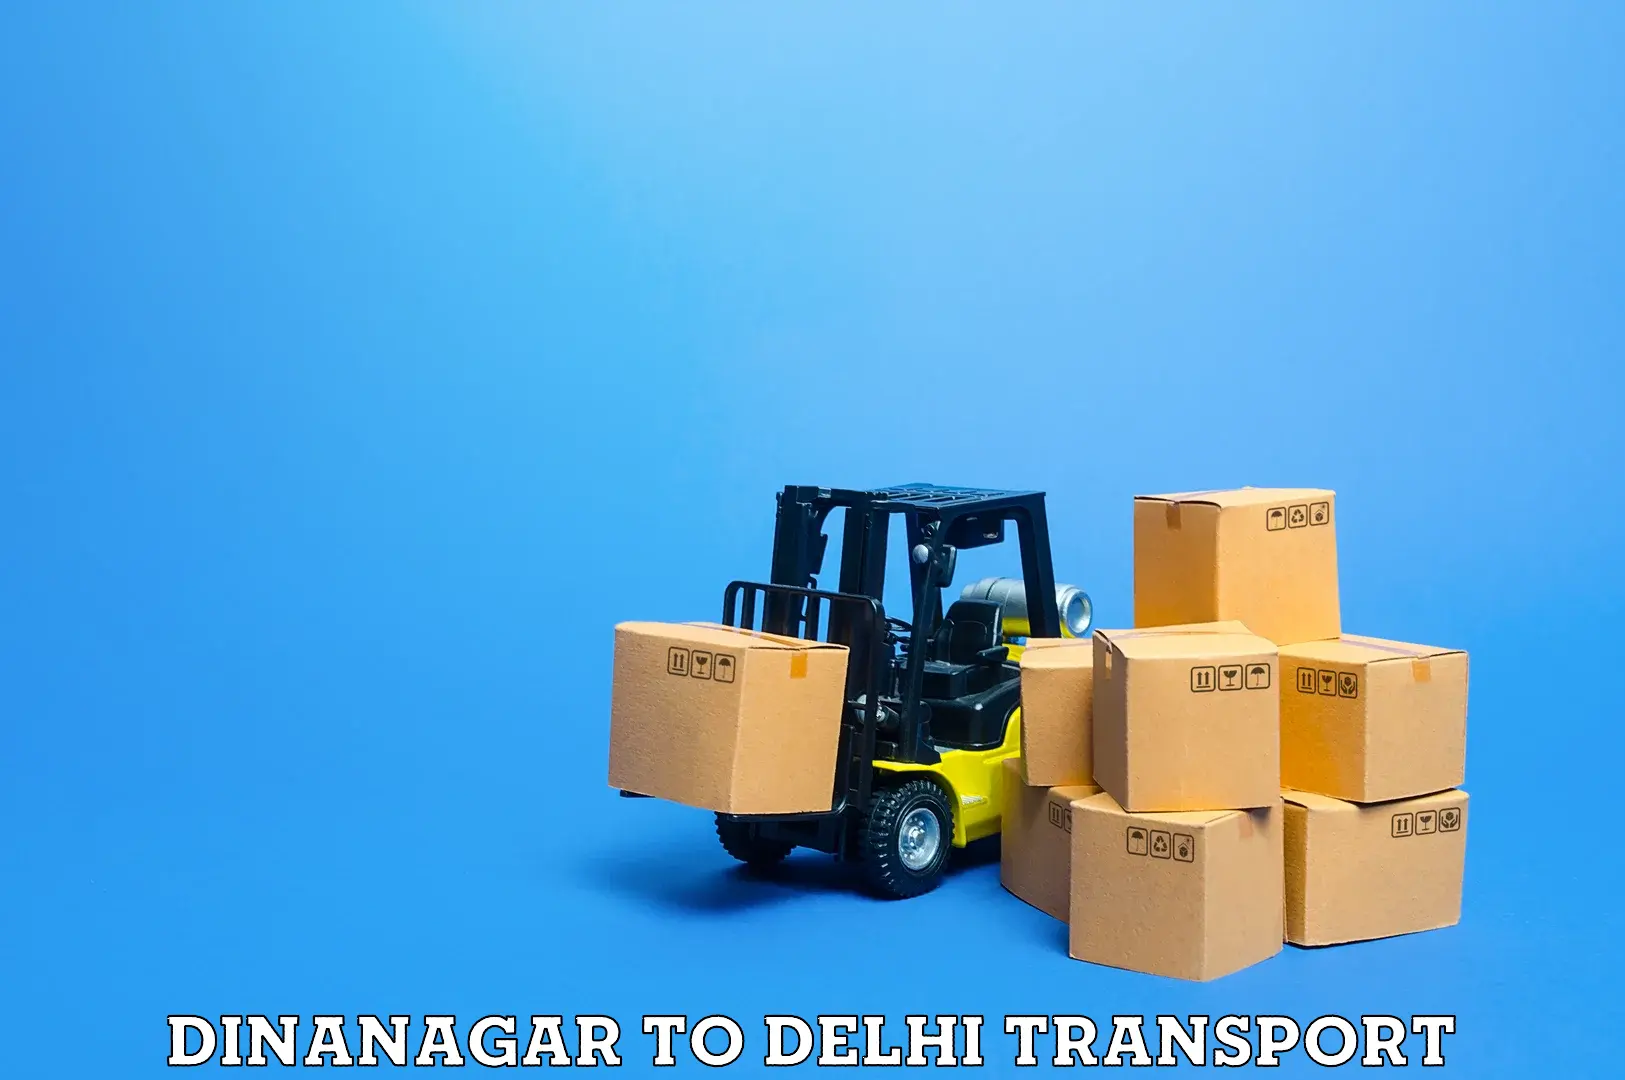 Pick up transport service Dinanagar to IIT Delhi